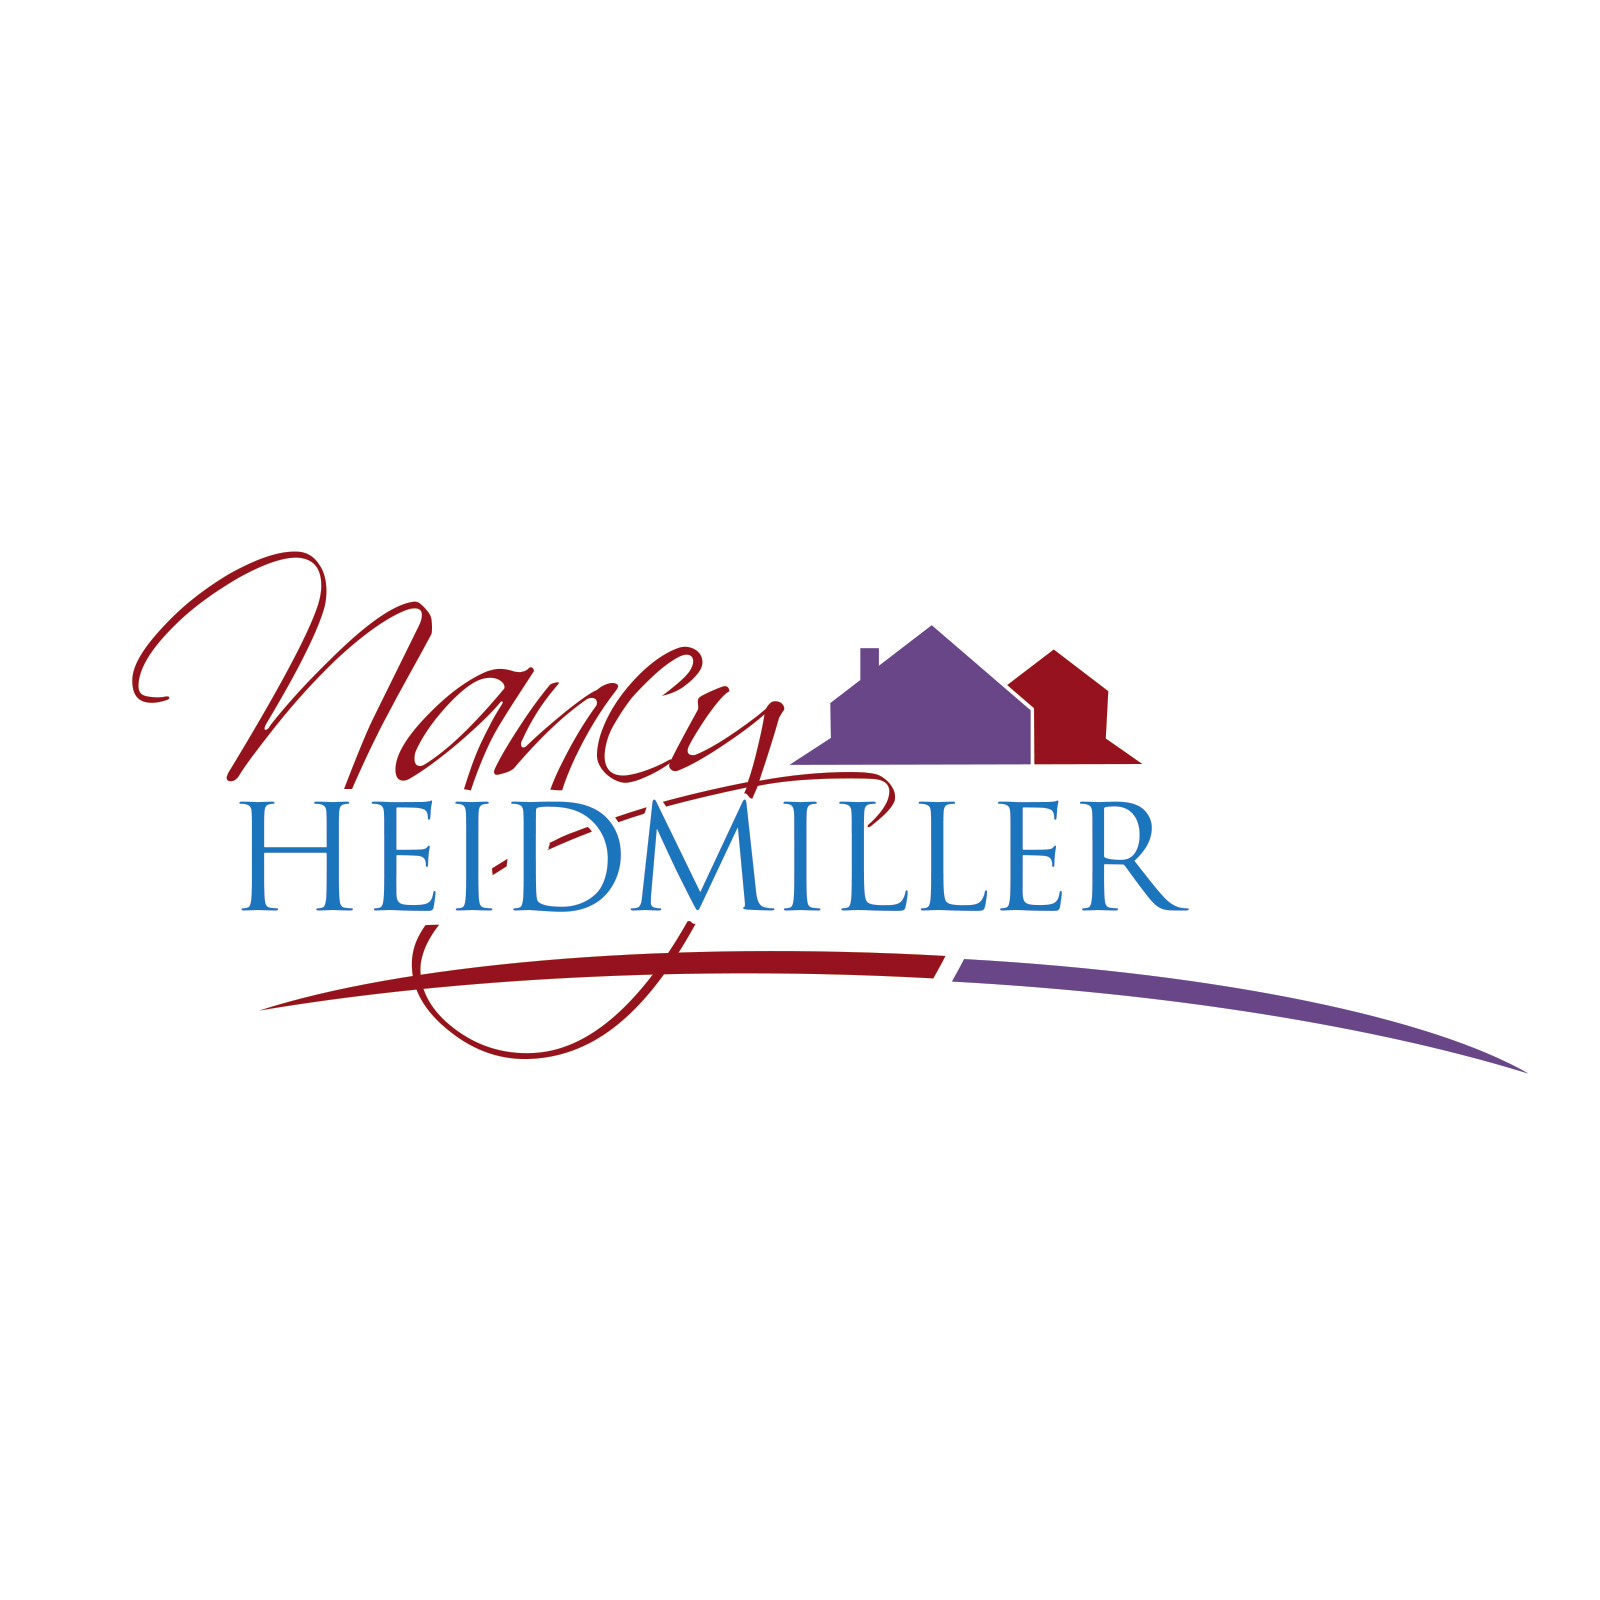 Nancy Heidmiller Personal Real Estate